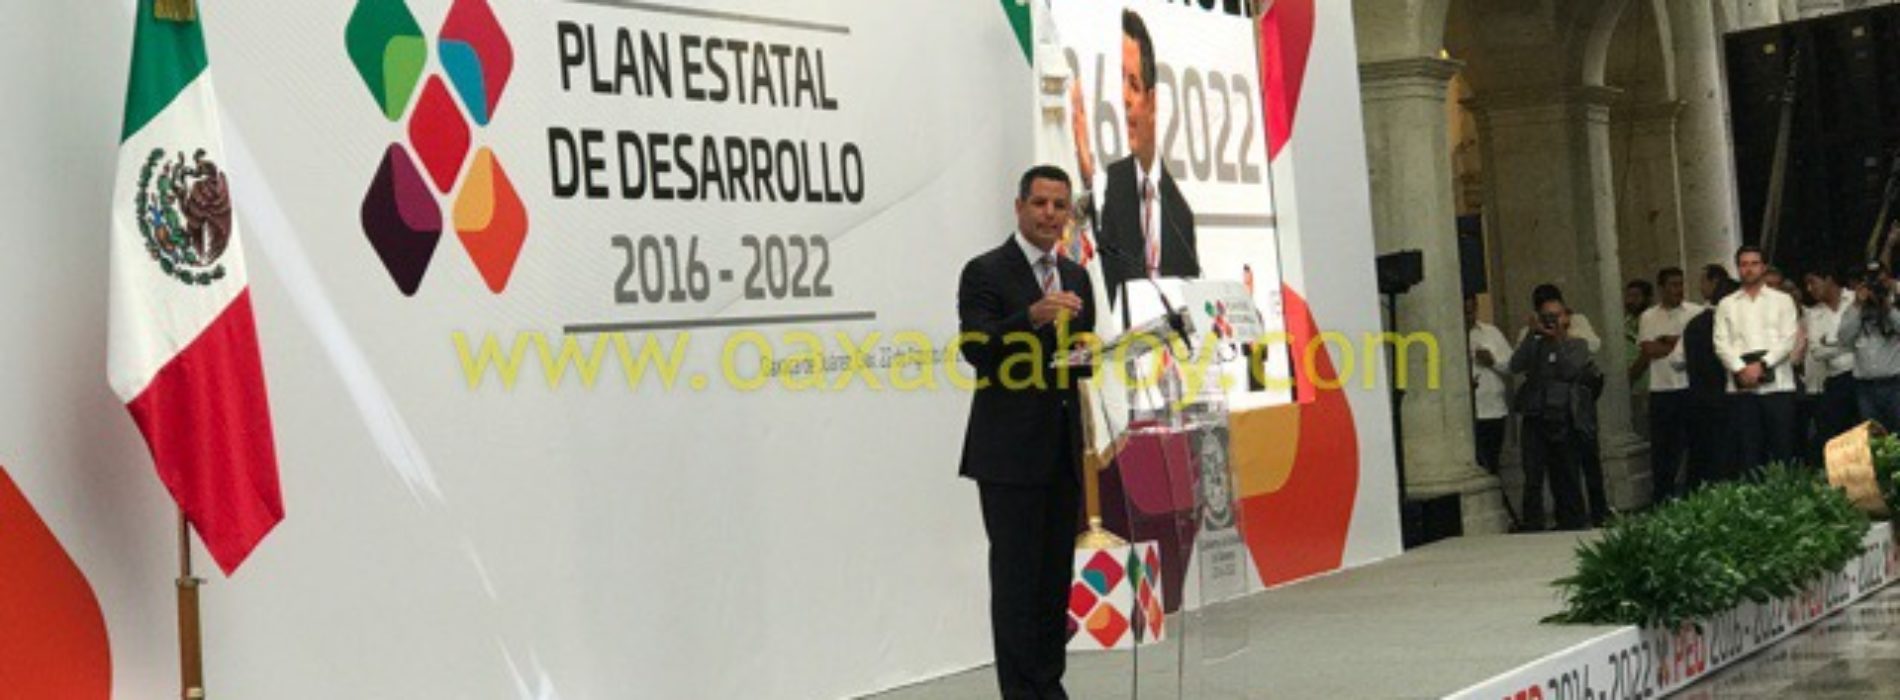 Plan Estatal de Desarrollo revertirá deficiencias en Oaxaca:Murat